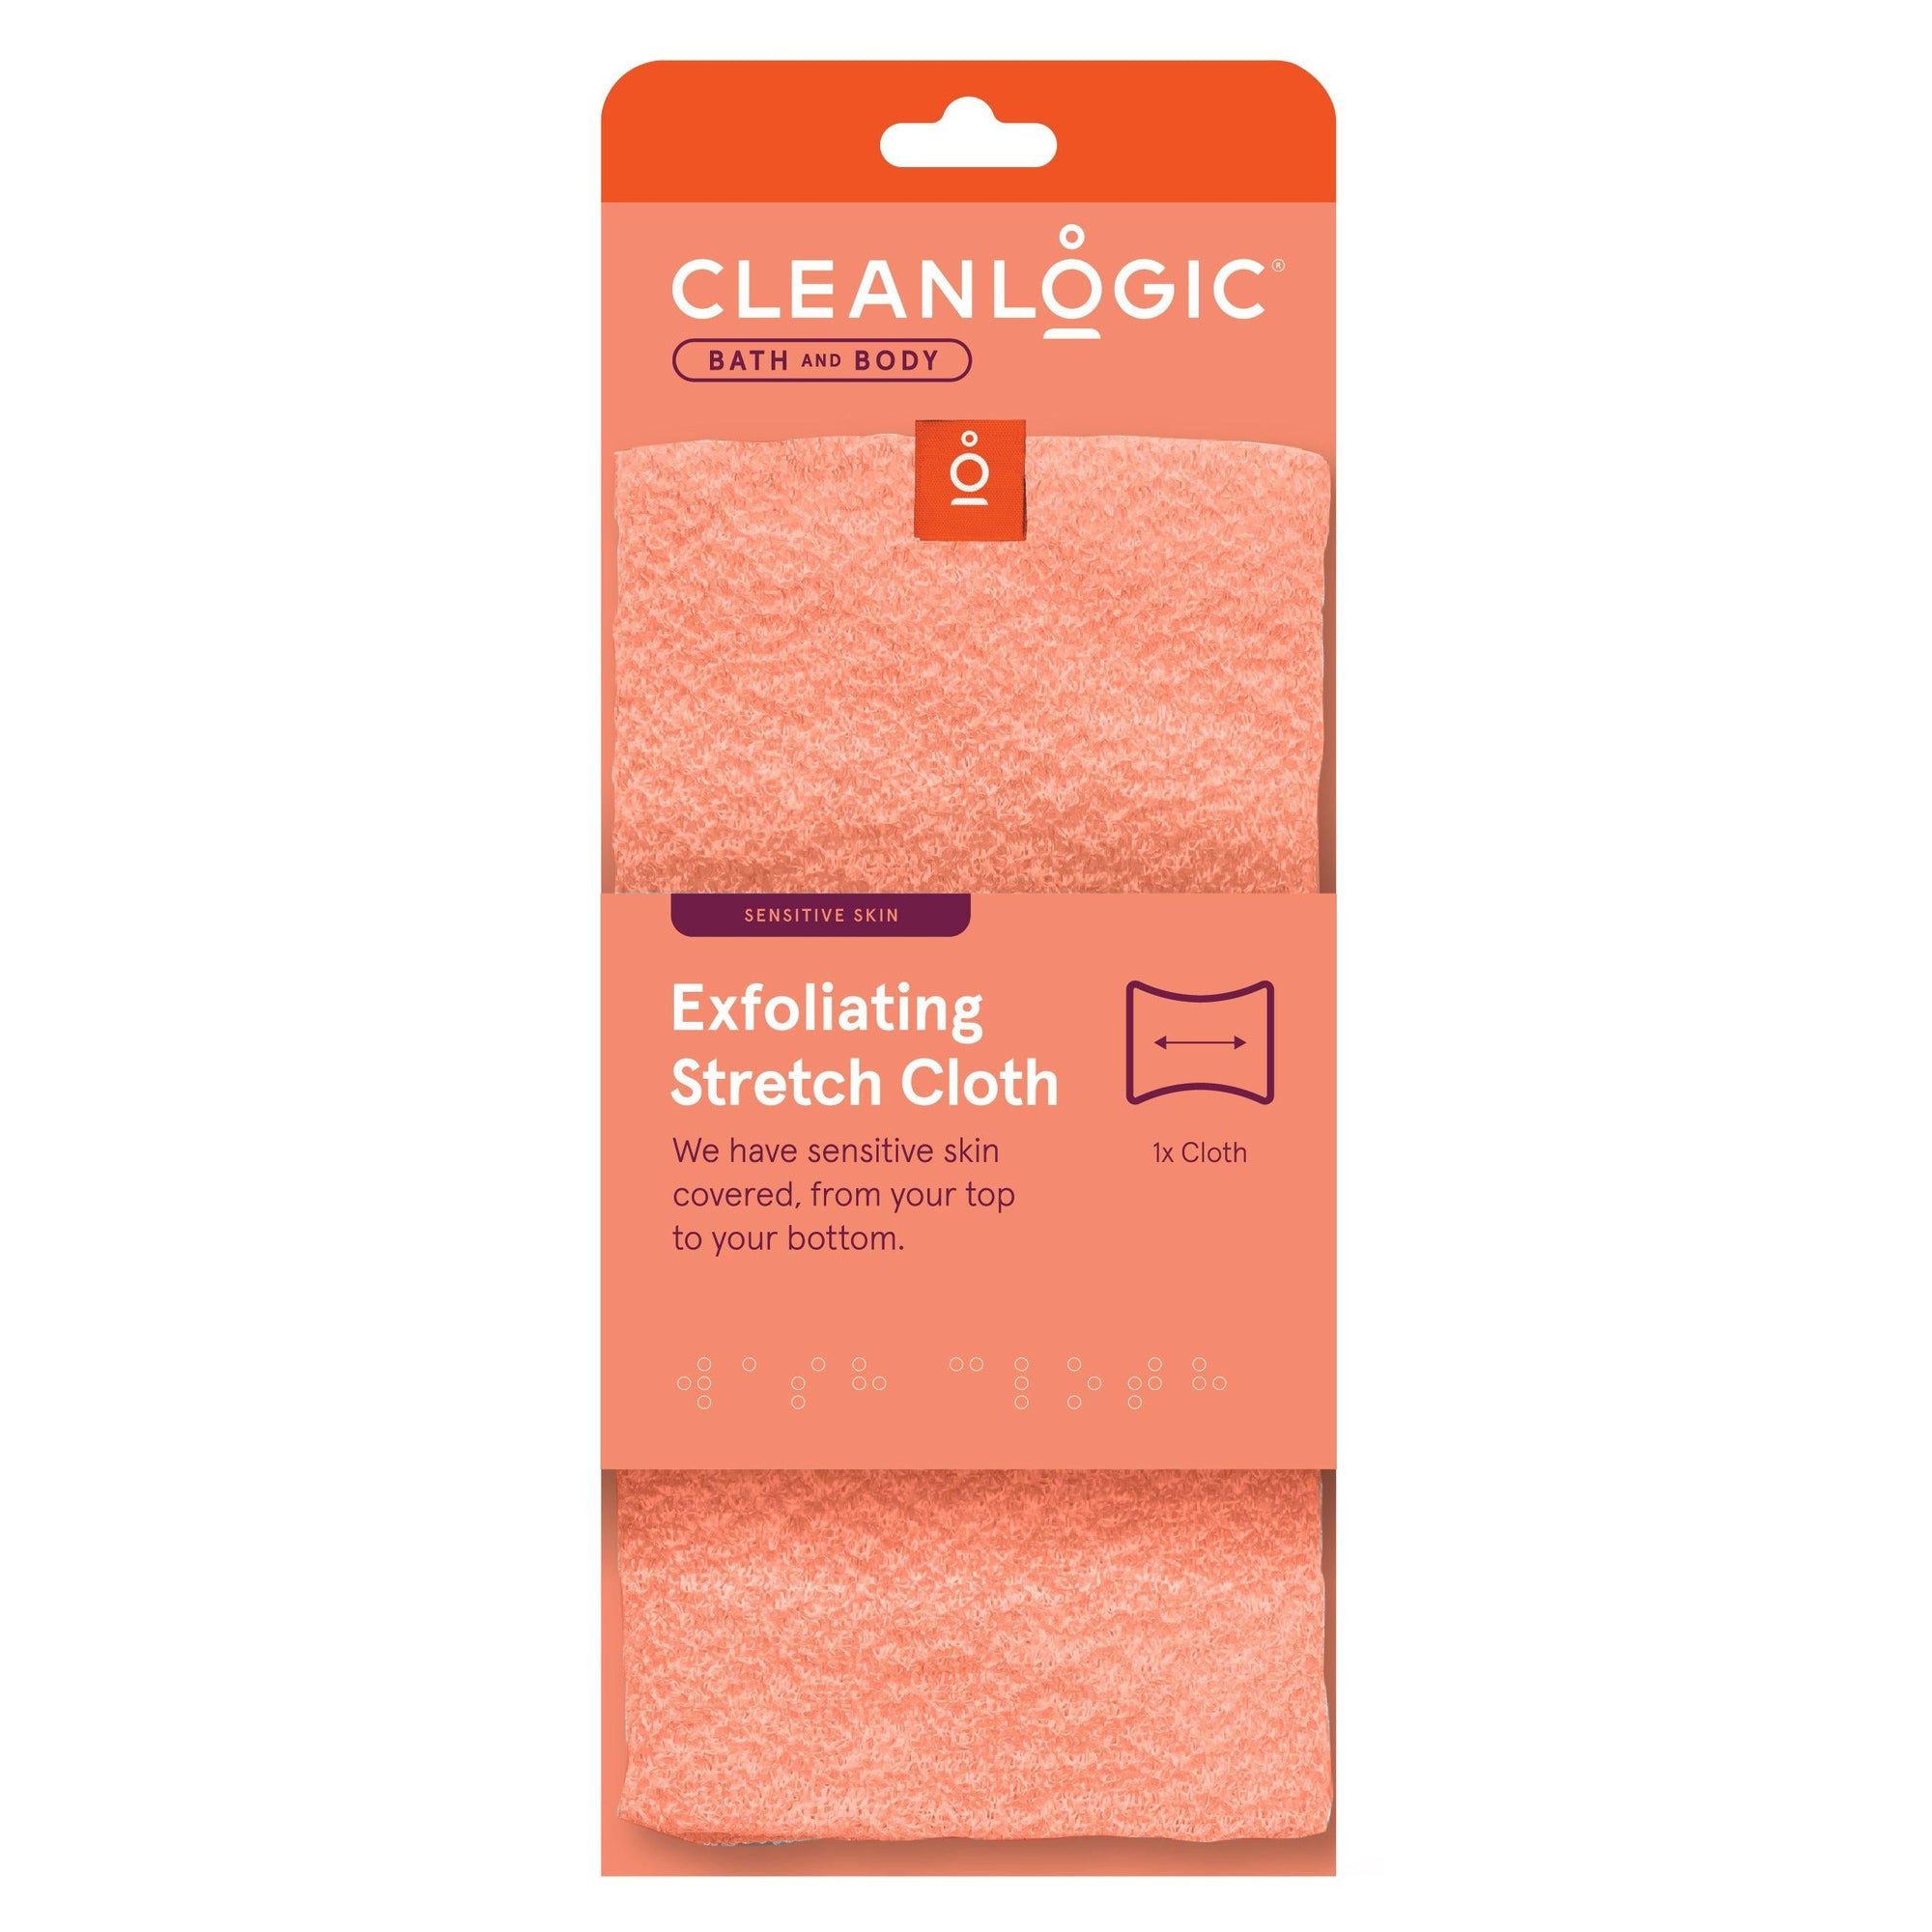 Cleanlogic Exfoliating Stretch Cloth - Sensitive